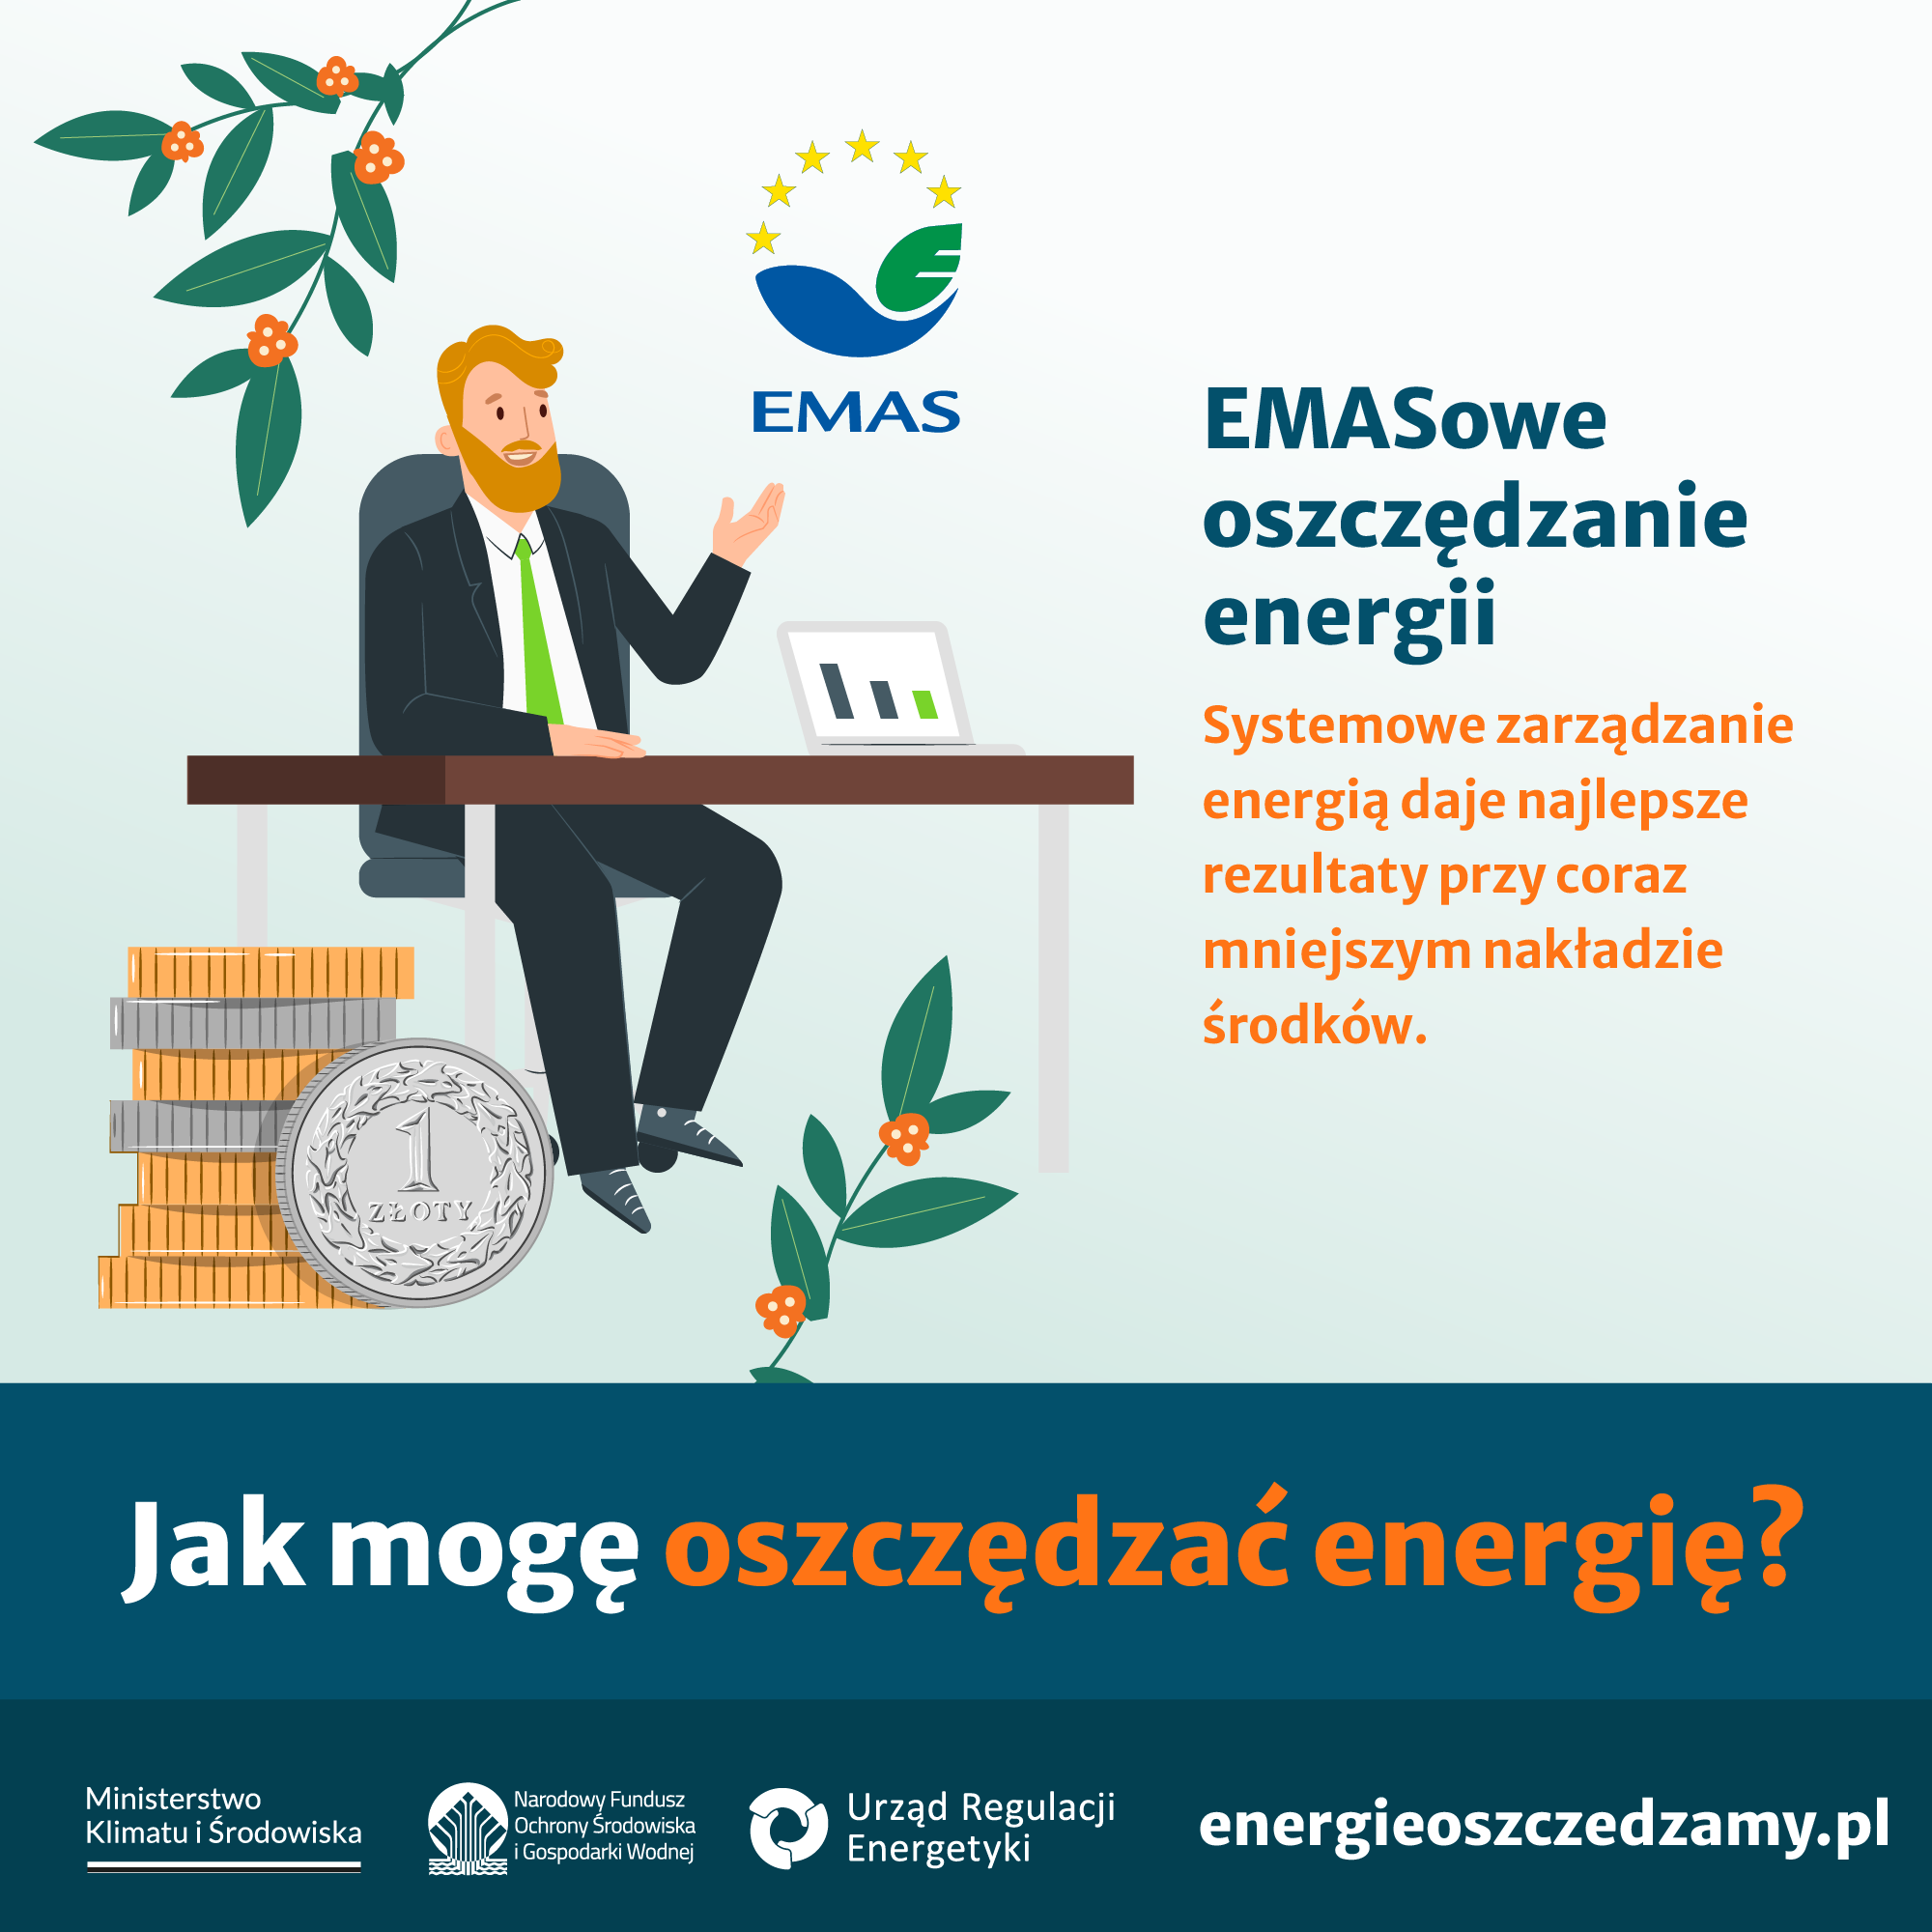 EMASowe oszczędzanie energii